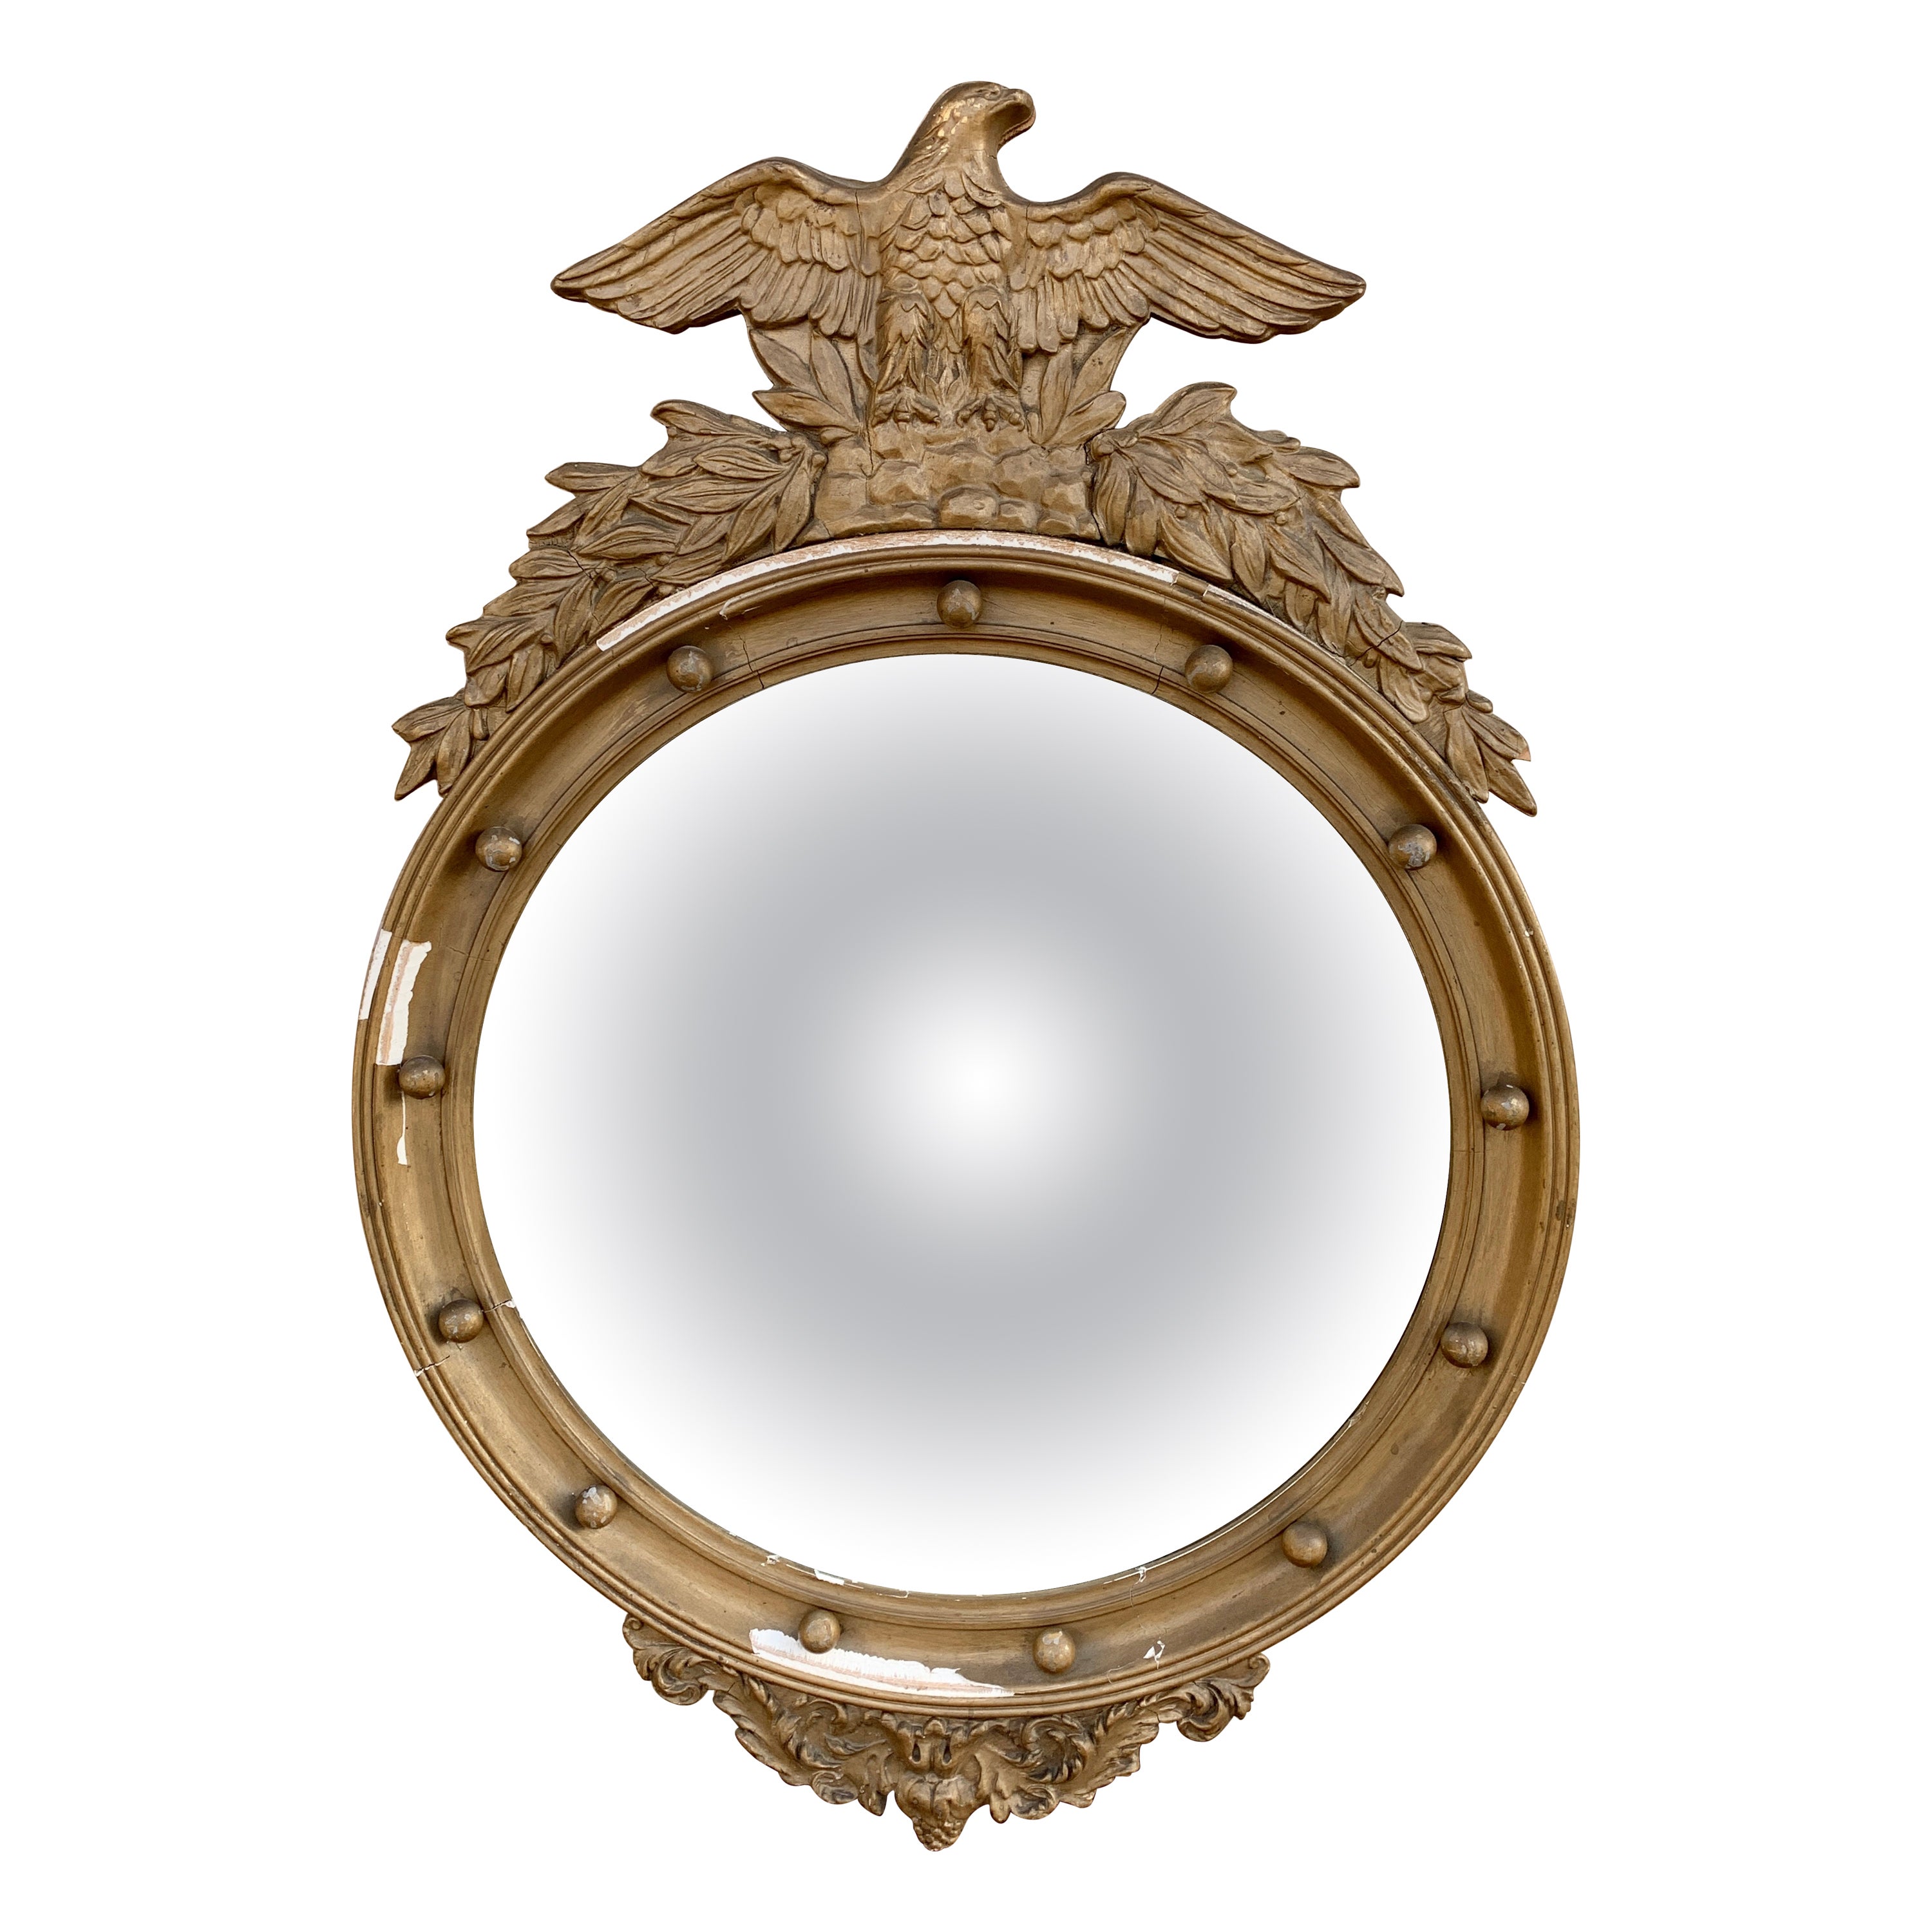 Antique miroir convexe américain fédéral en bois doré représentant un aigle musoir